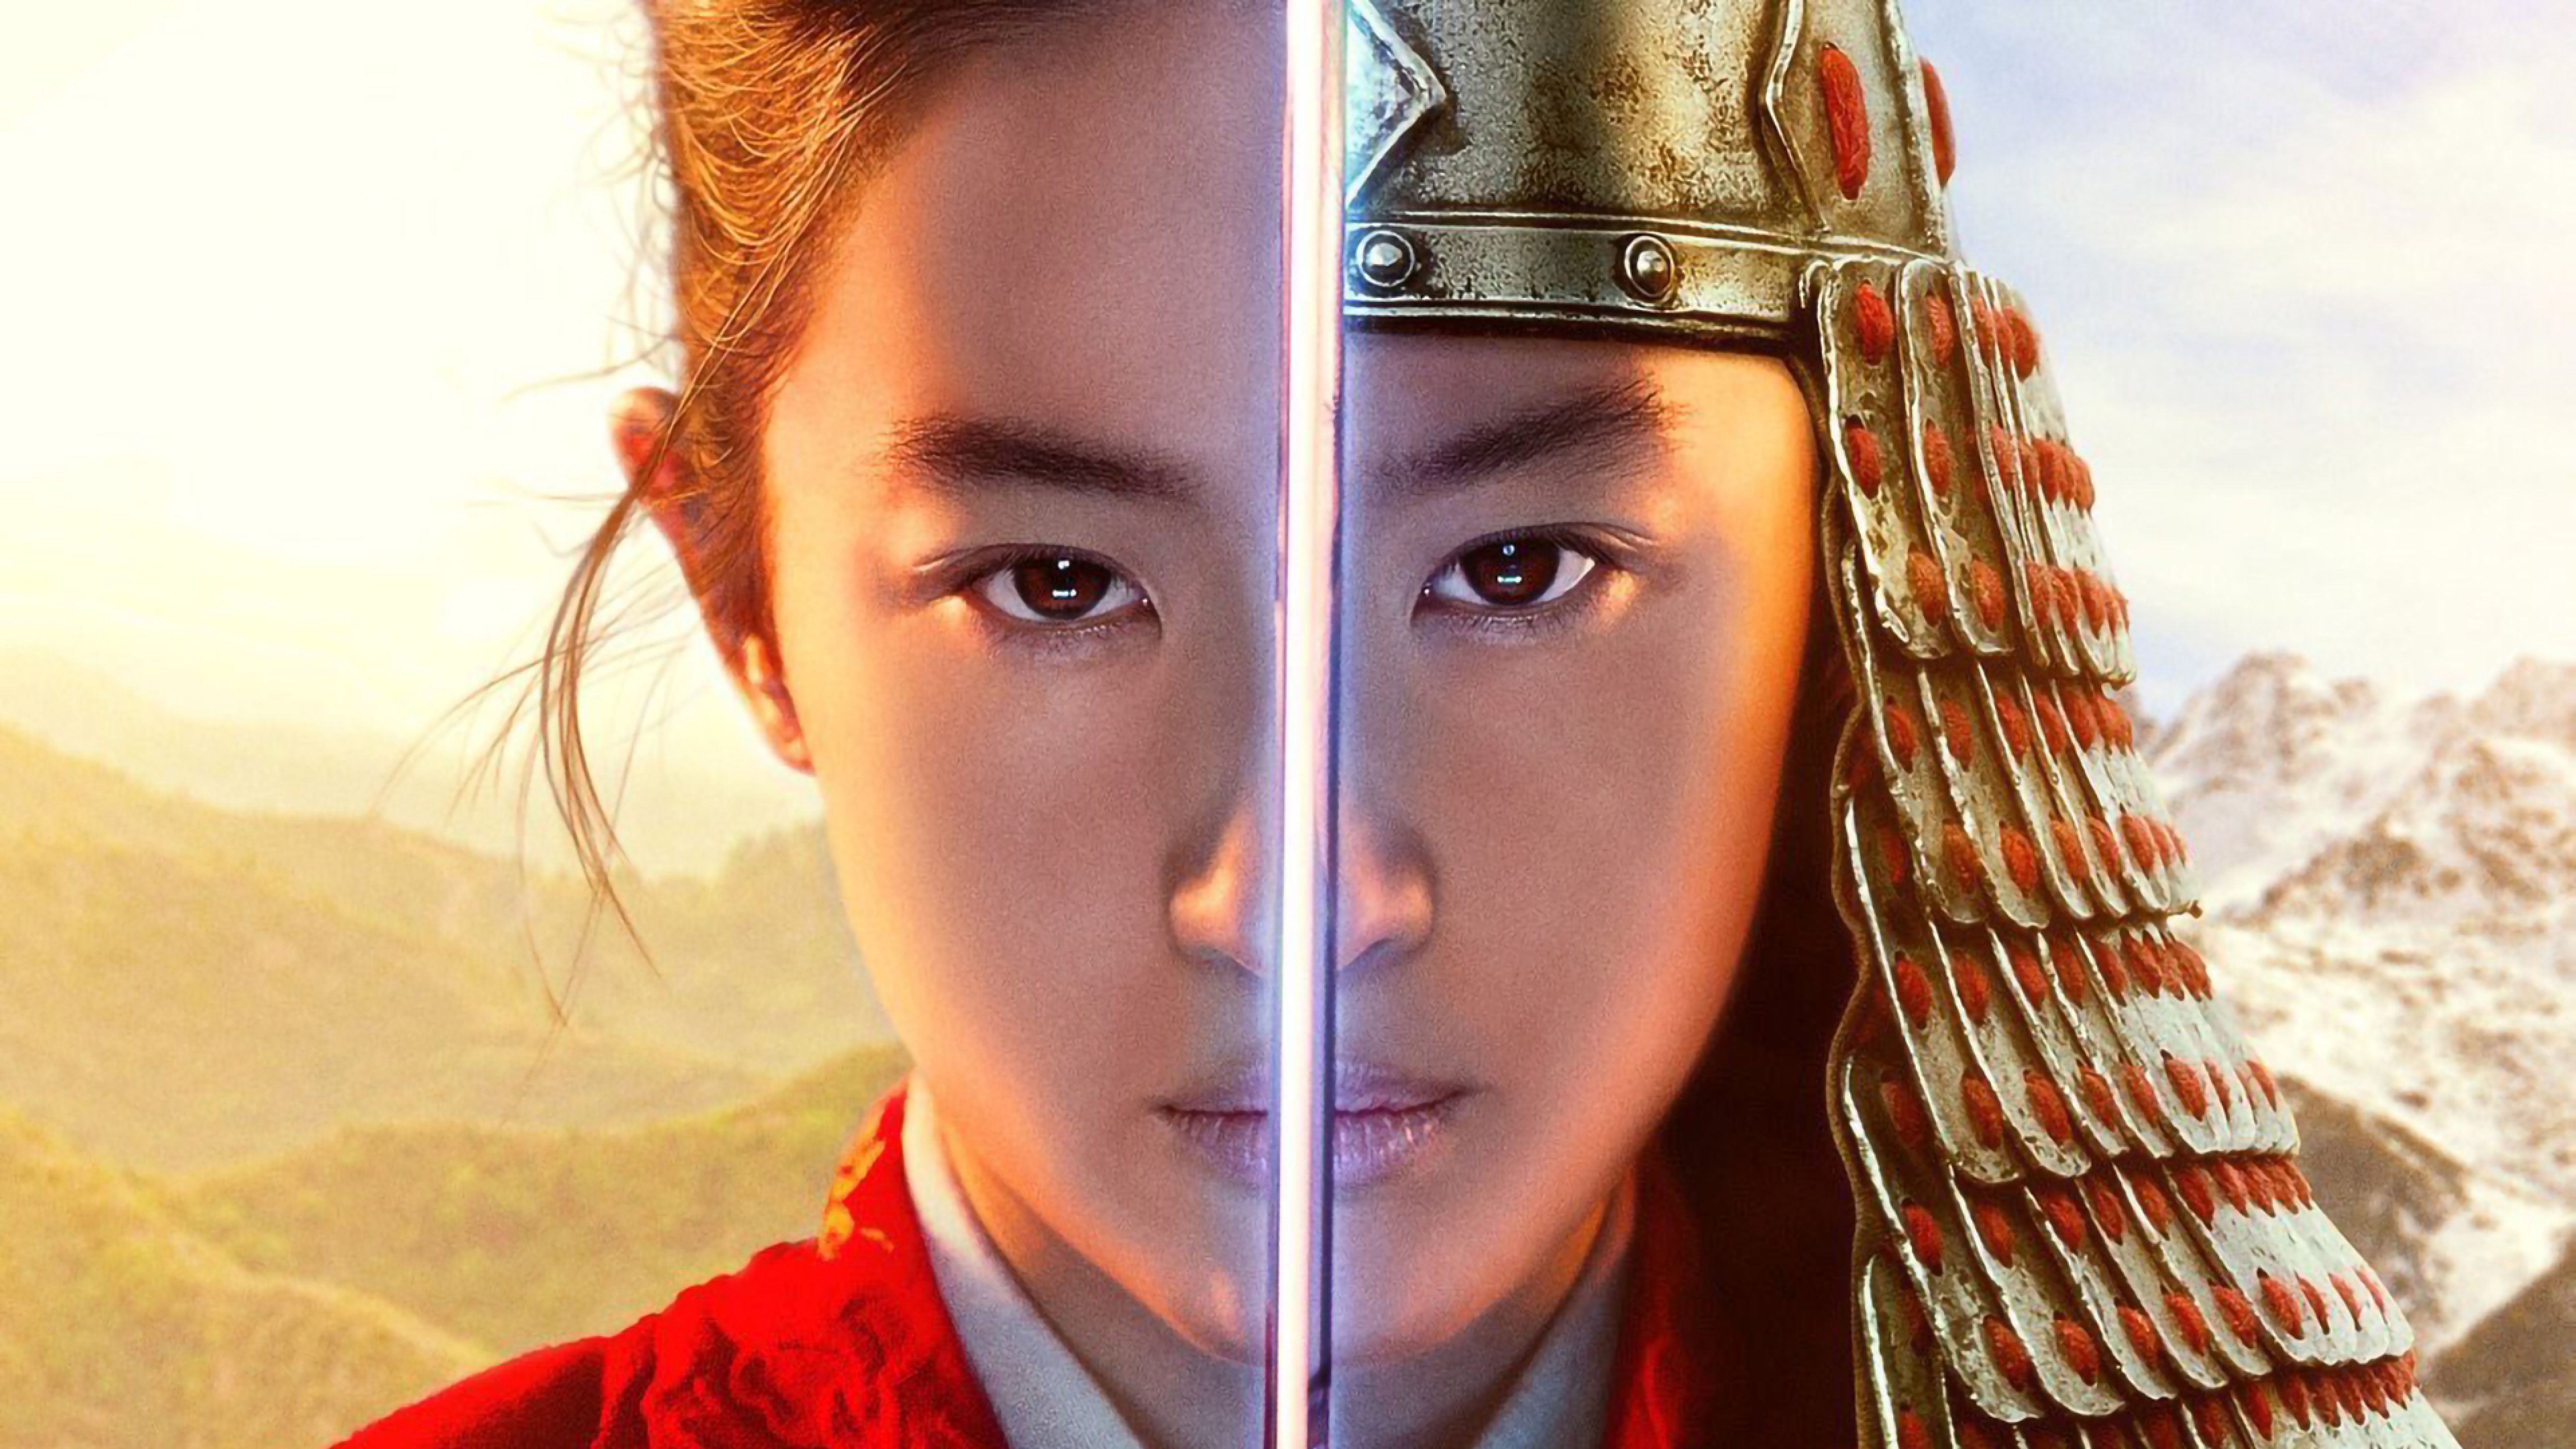 Mulan Movie Poster Wallpapers